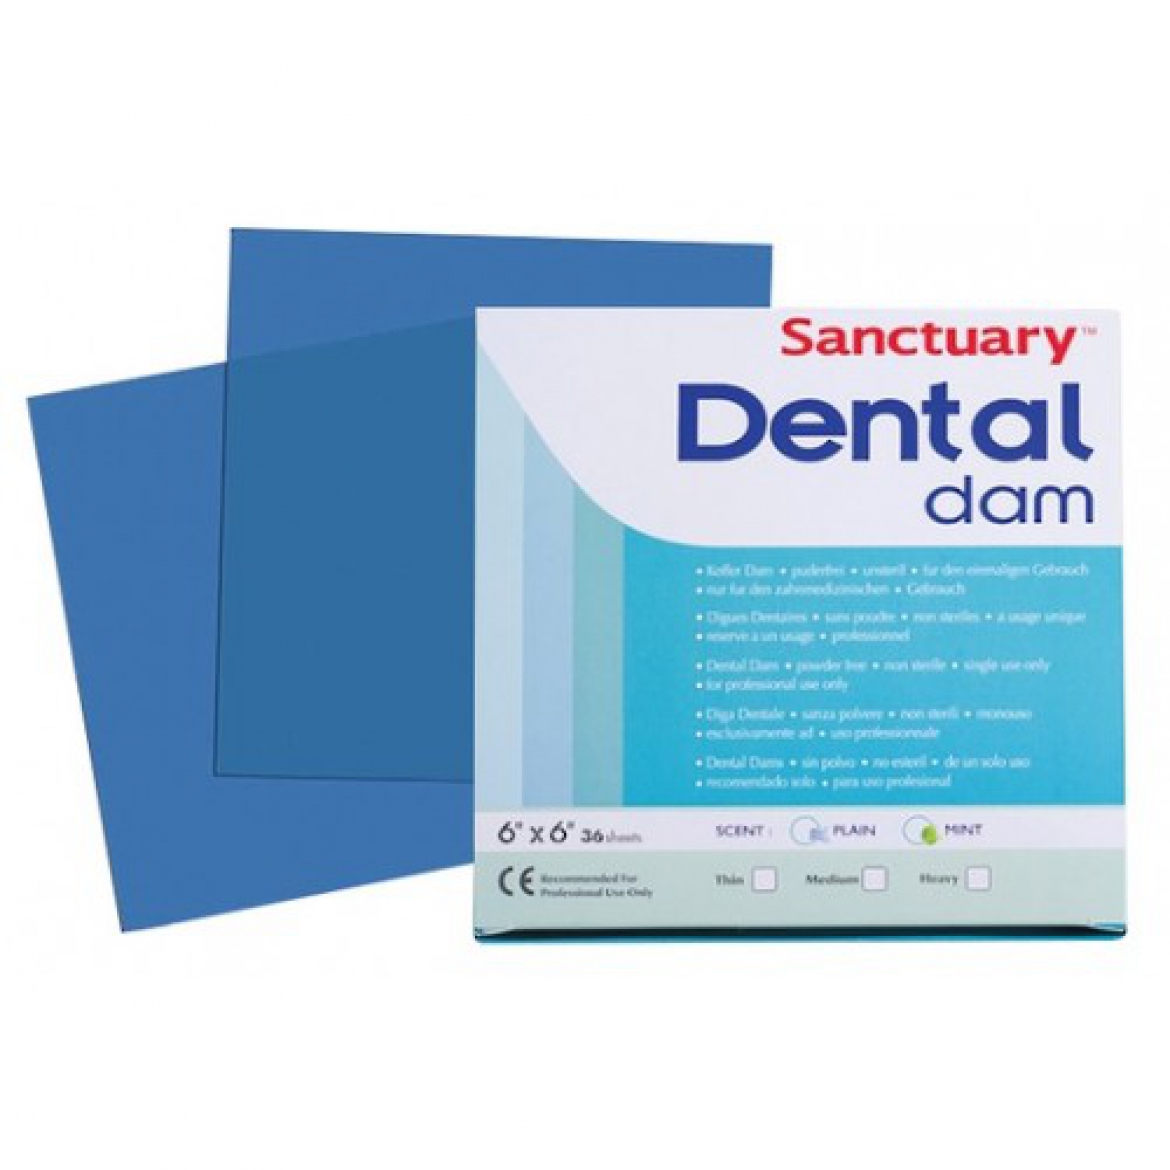 Sanctuary Latex Dental dam, листы для коффердама (средние, 152мм*152мм) латексные синие, 36 шт.